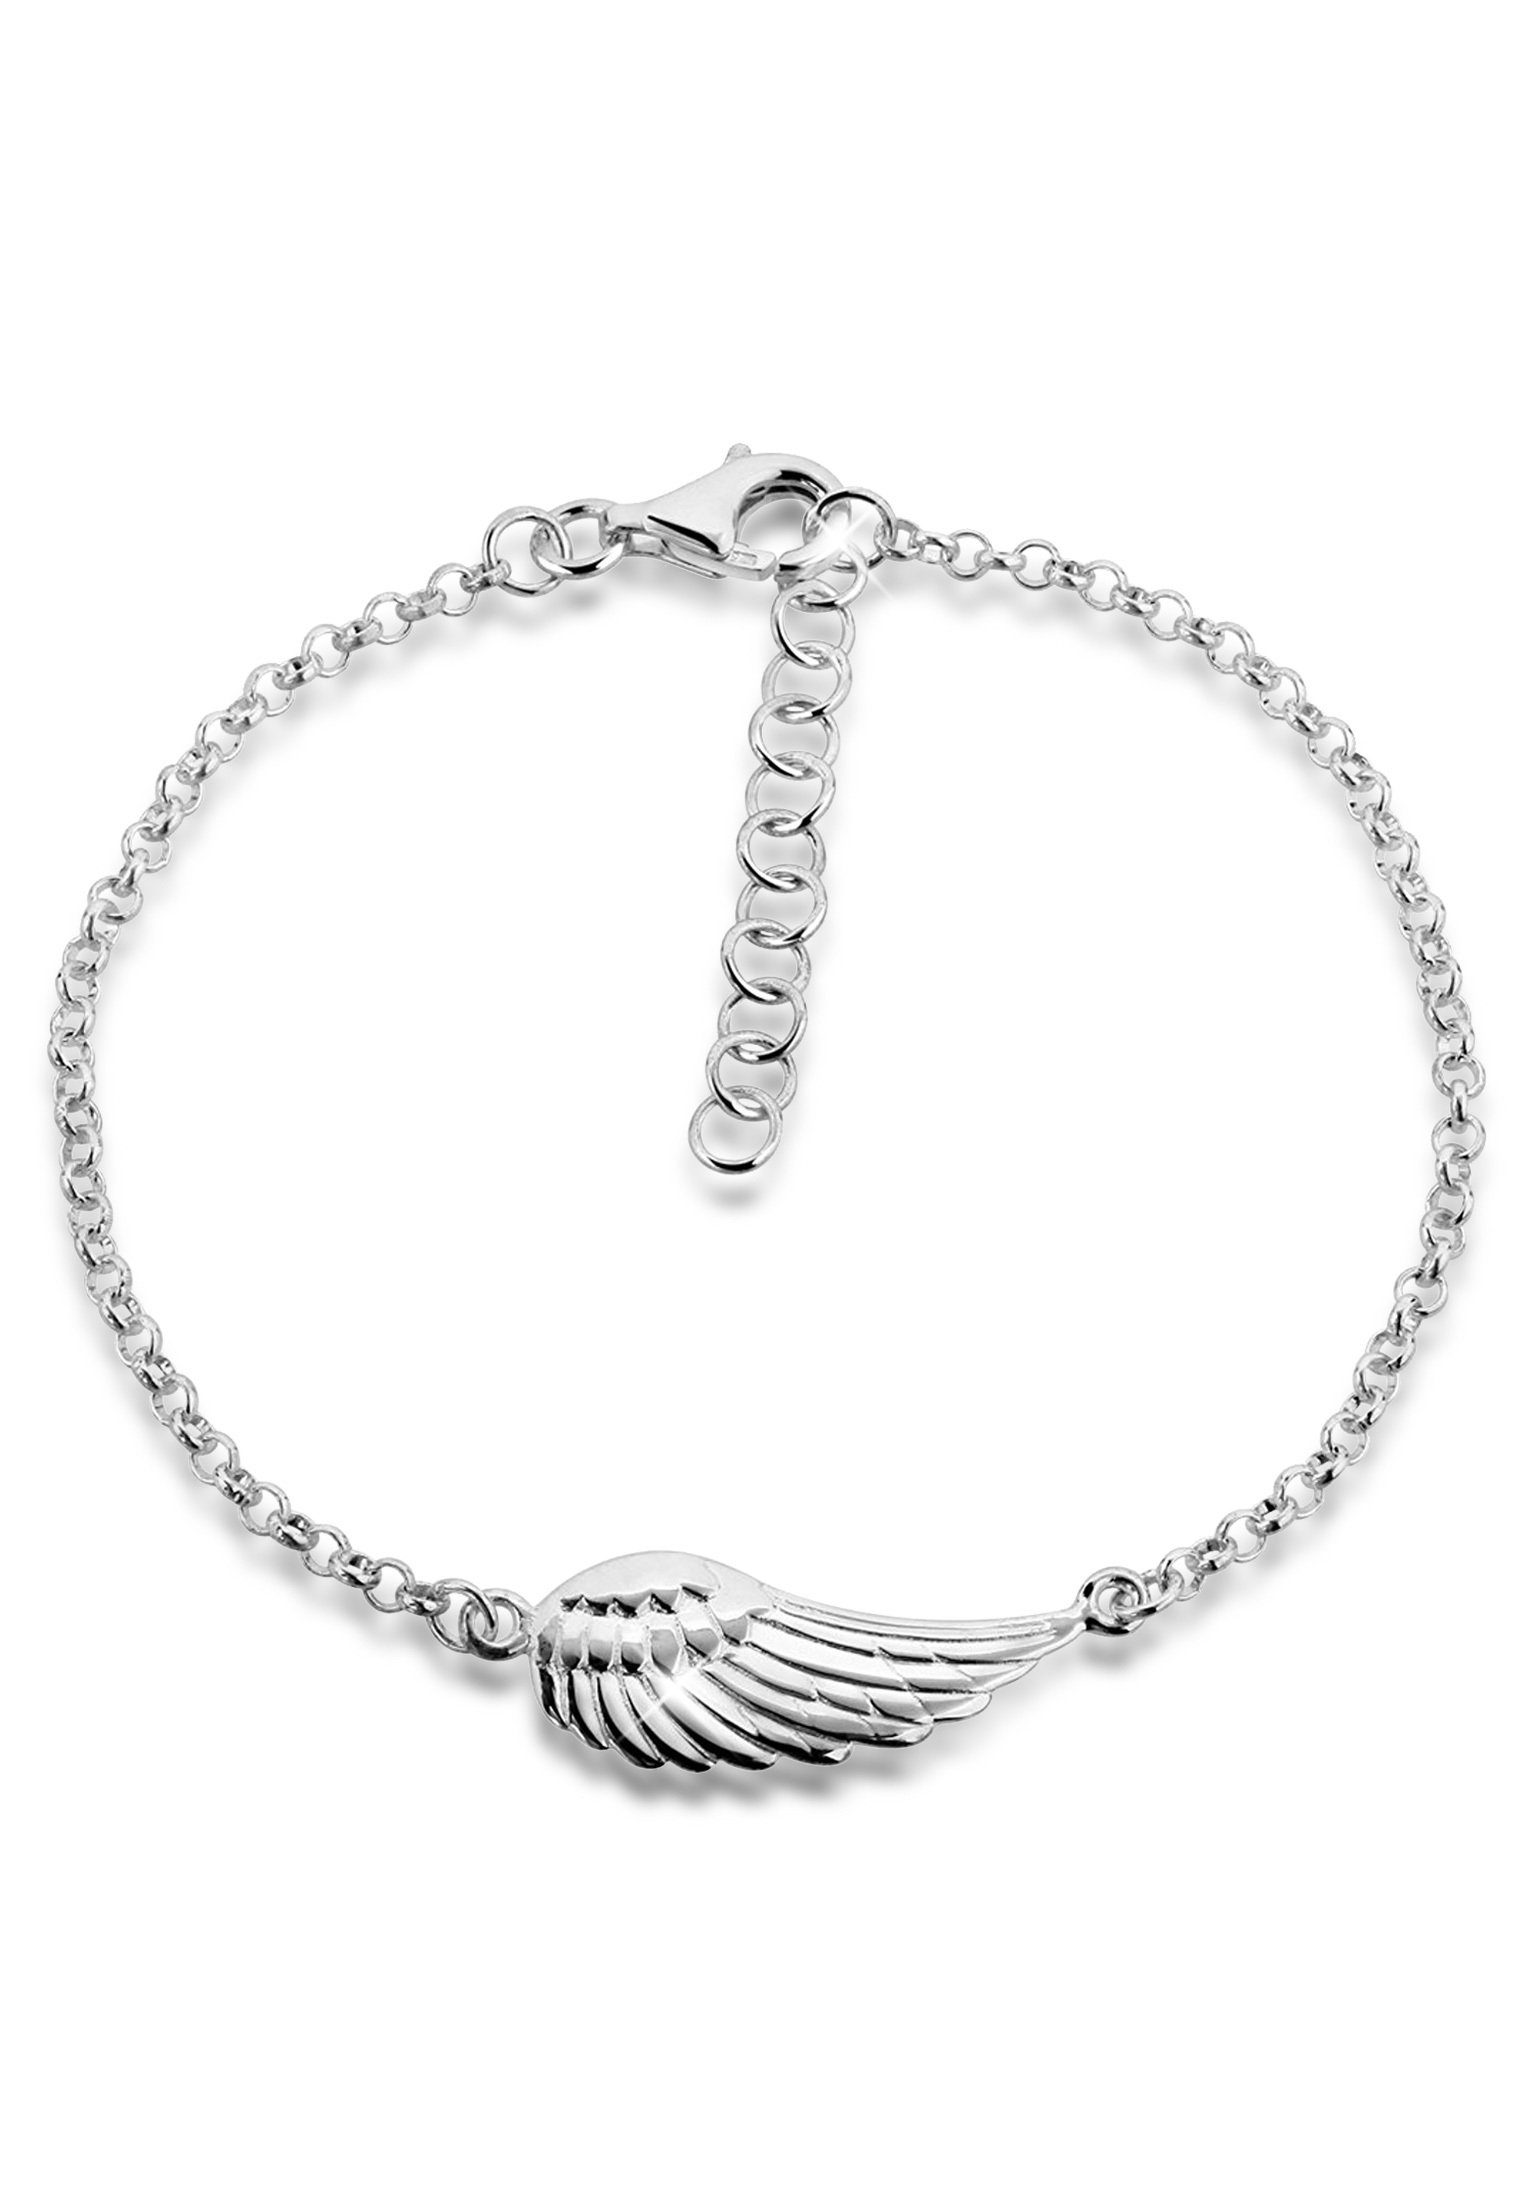 Schutzengel In Juwelier-Qualität Flügel, Nenalina hochwertiger Anhänger 925 Armband Flügel Silber, gefertigt sehr